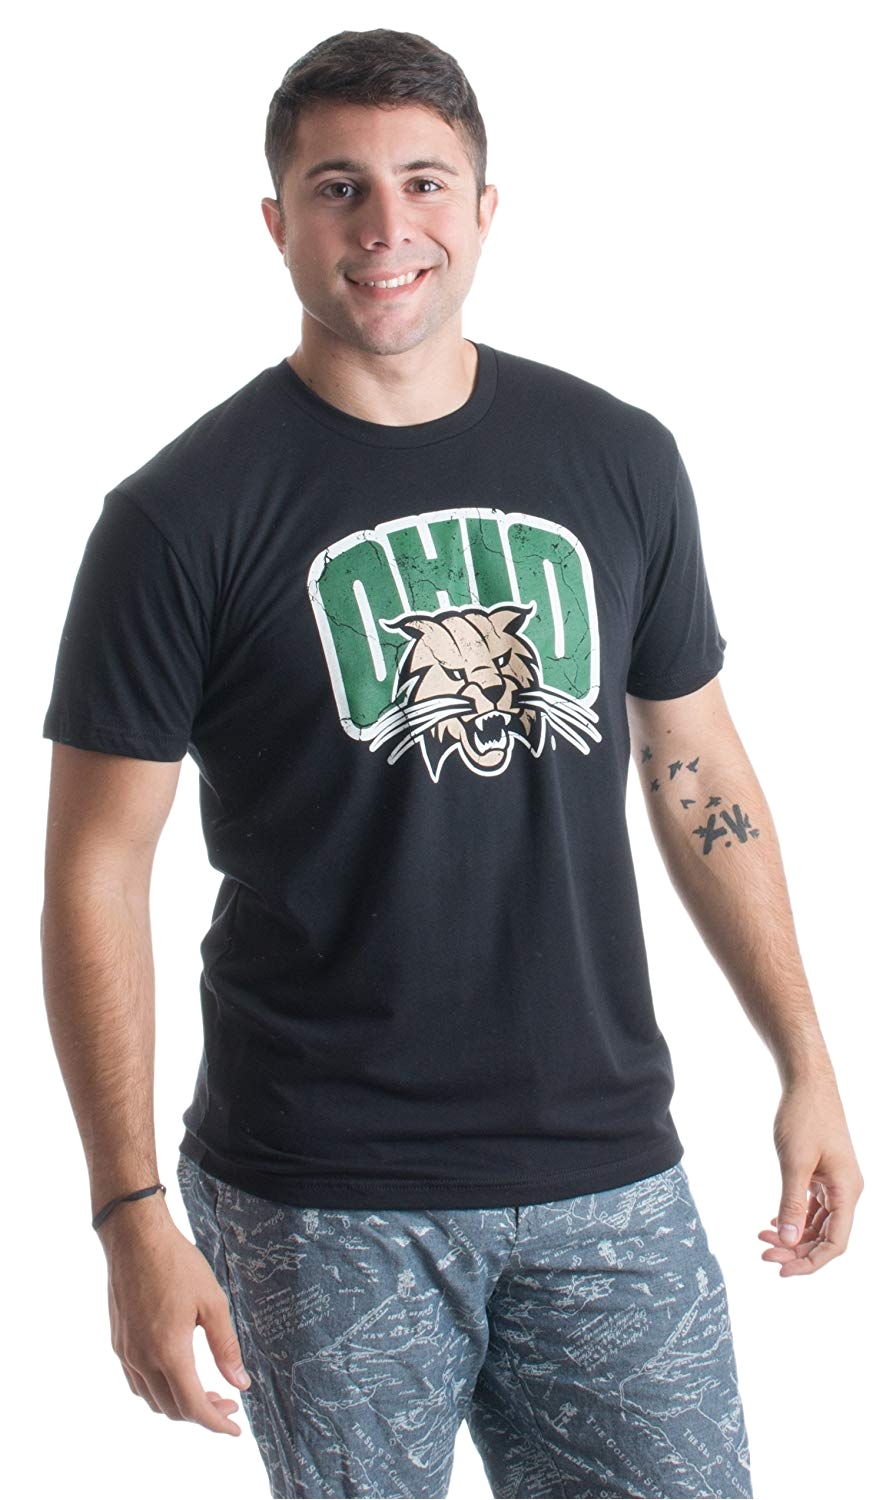 amazon com ohio university ohio bobcats vintage style licensed unisex t shirt clothing